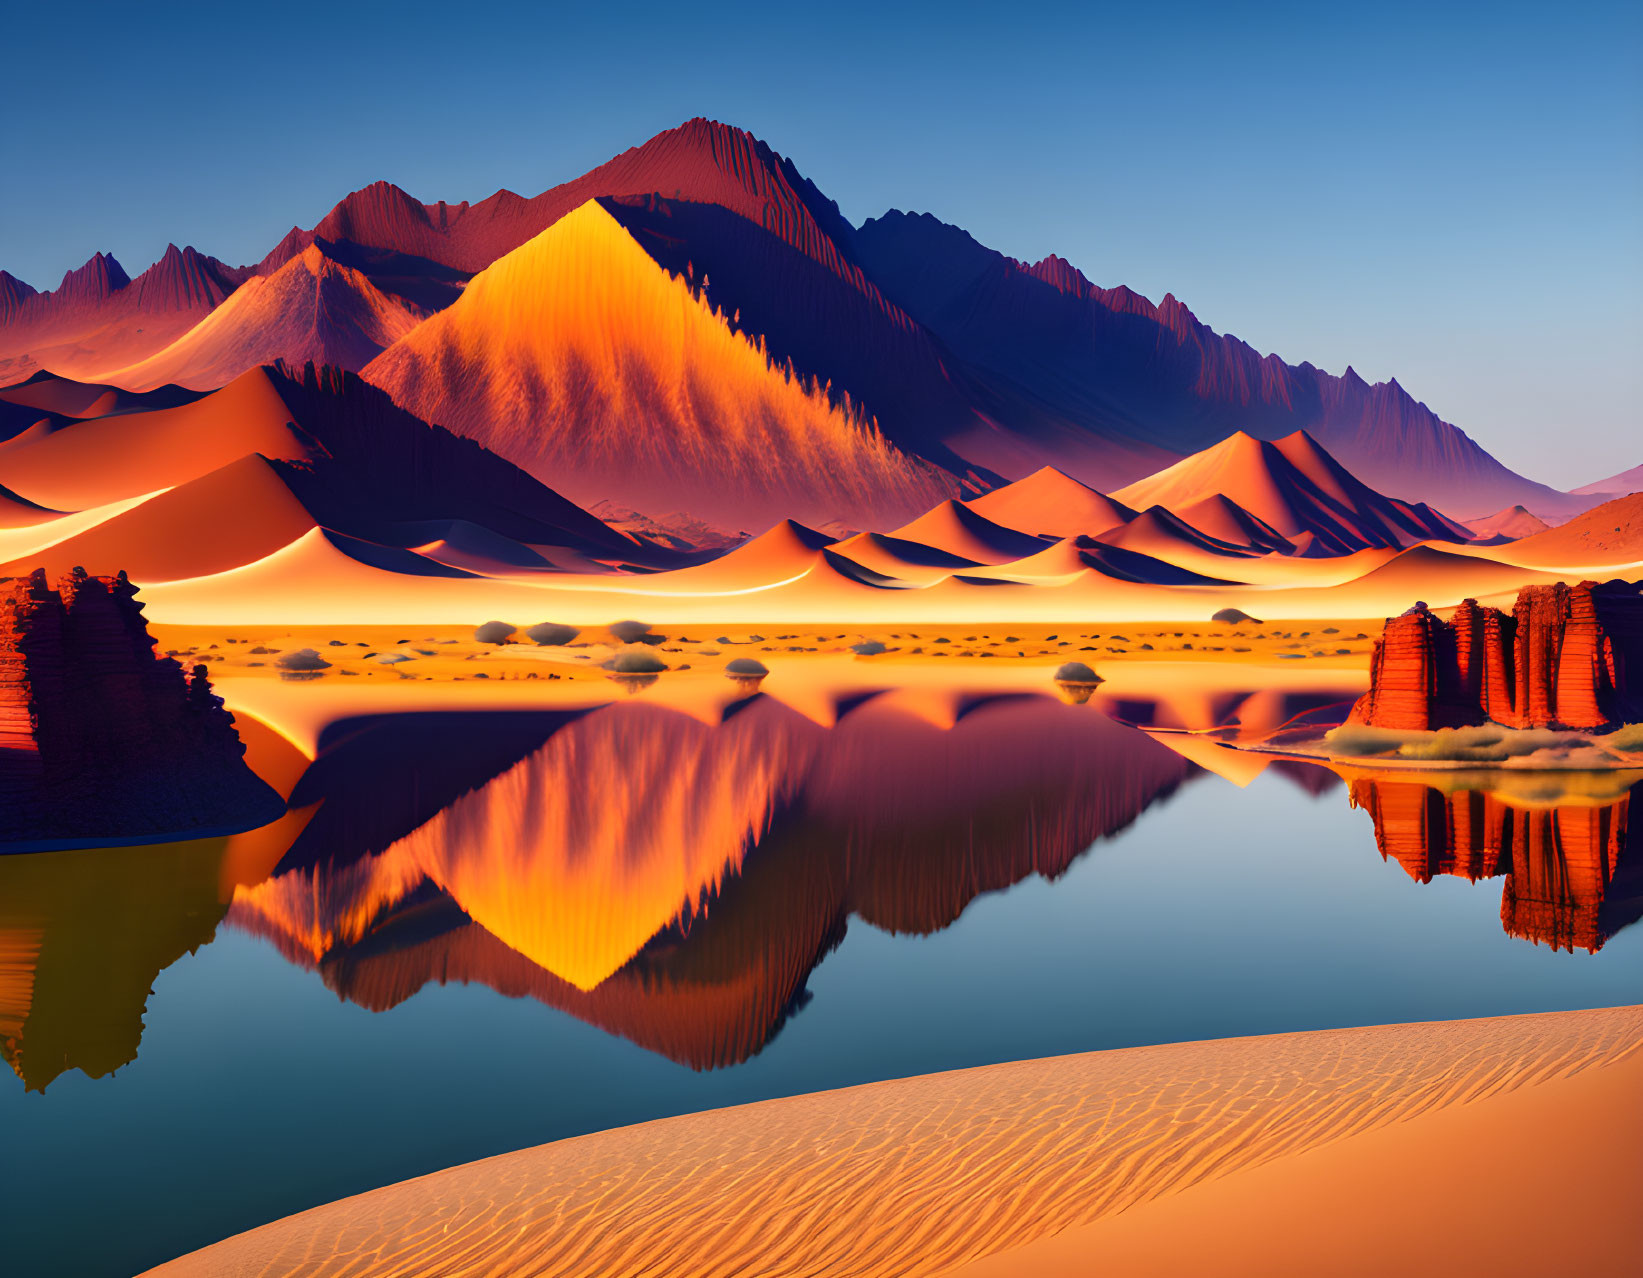 A lake in desert